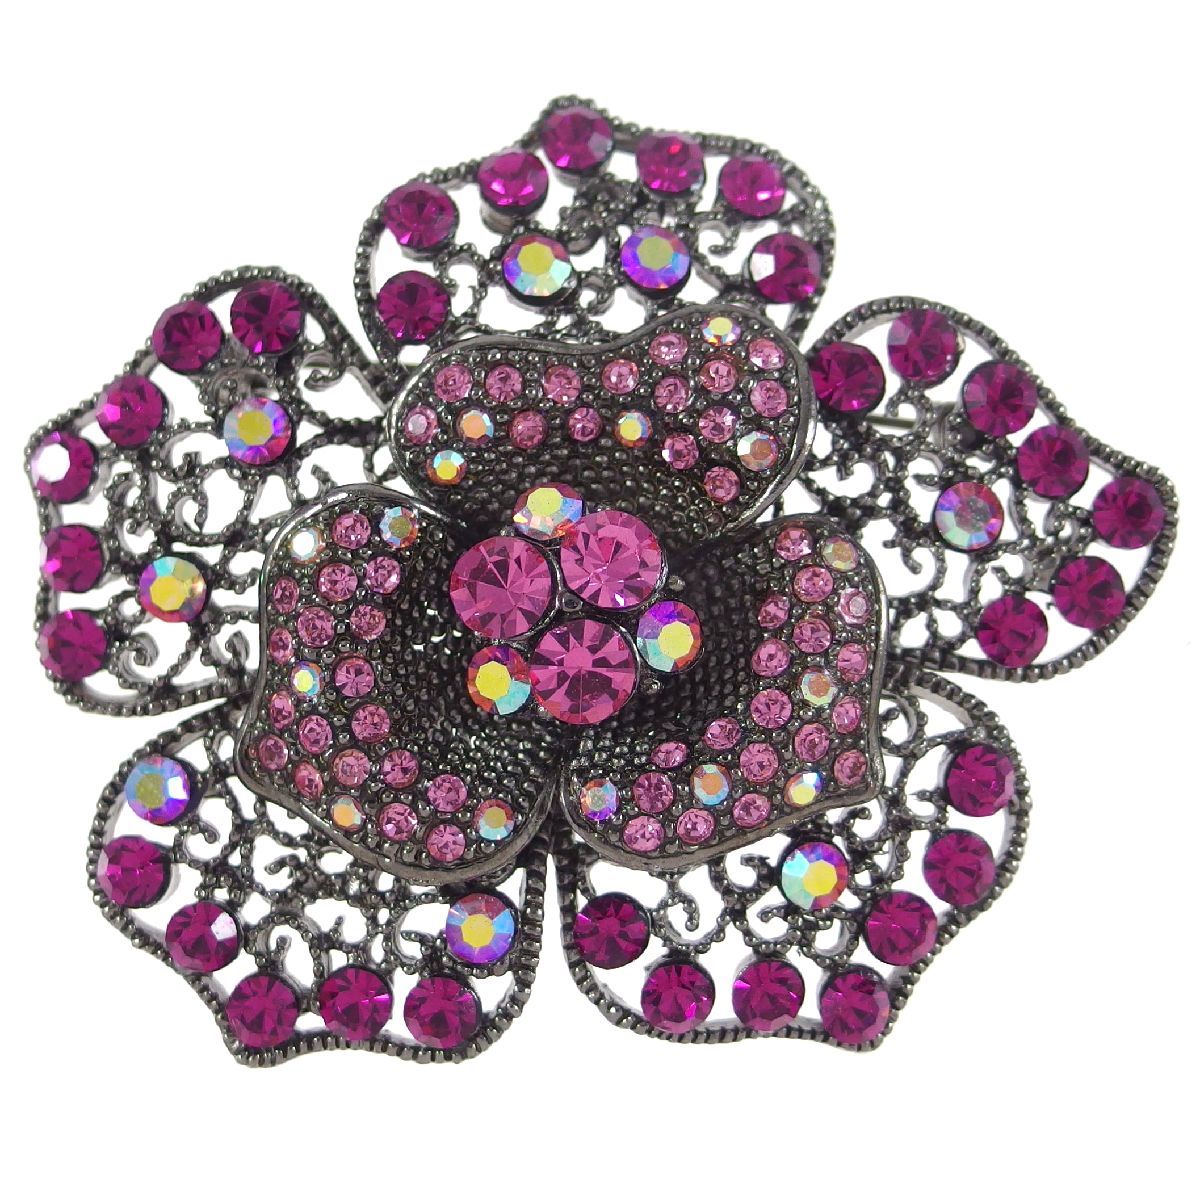 A4508◆ ヴィンテージブローチ ◆ ピンク系ラインストーンで飾られた花 * フラワーモチーフ ◆_画像1